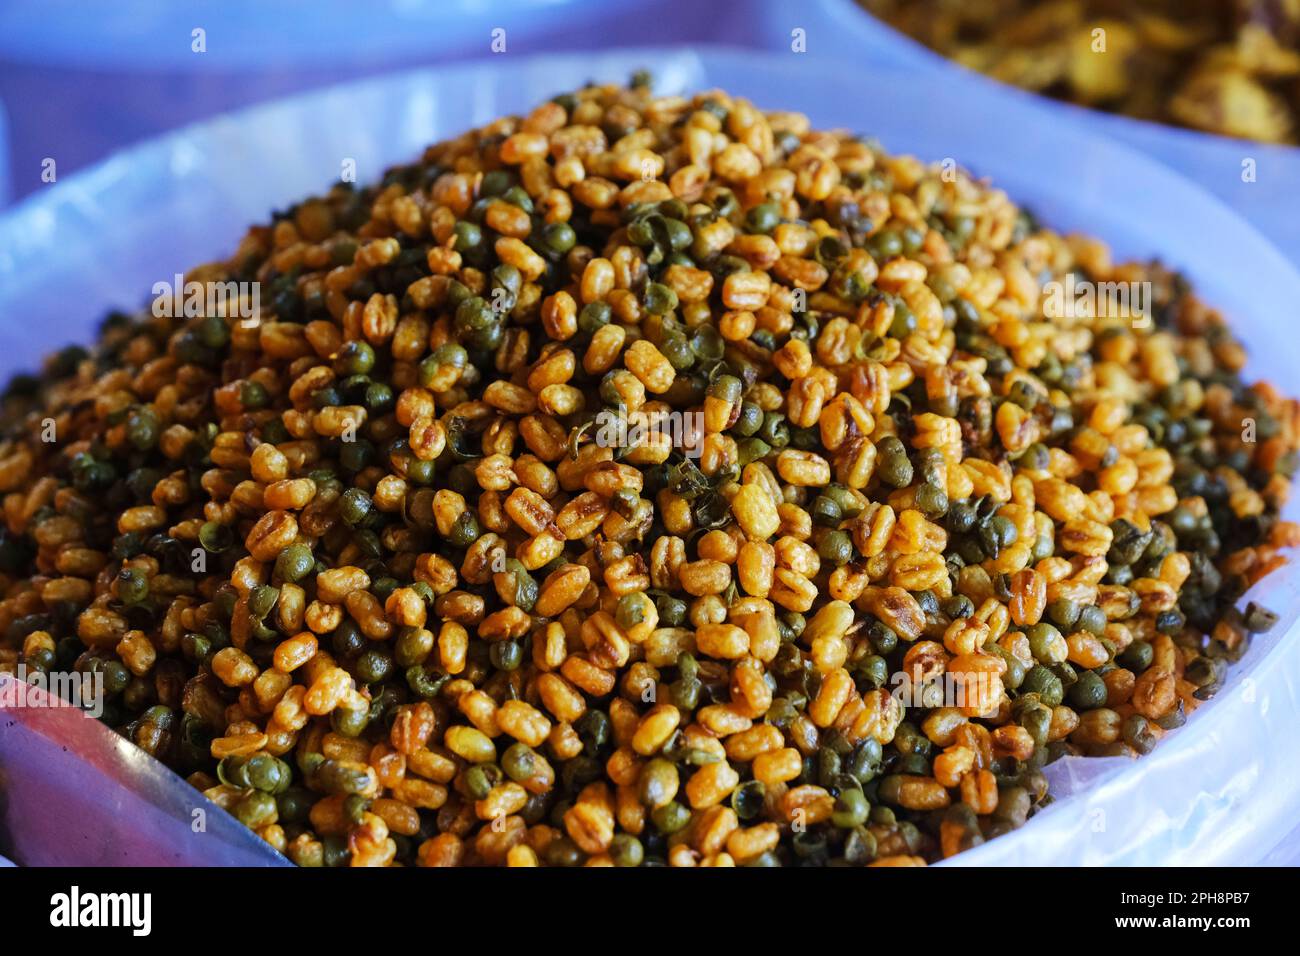 Farsan, spuntini in ciotole in vendita nel mercato indiano, piatto tradizionale indiano salato fritto fatto di grammo farina e mescolato con frutta secca. Foto Stock